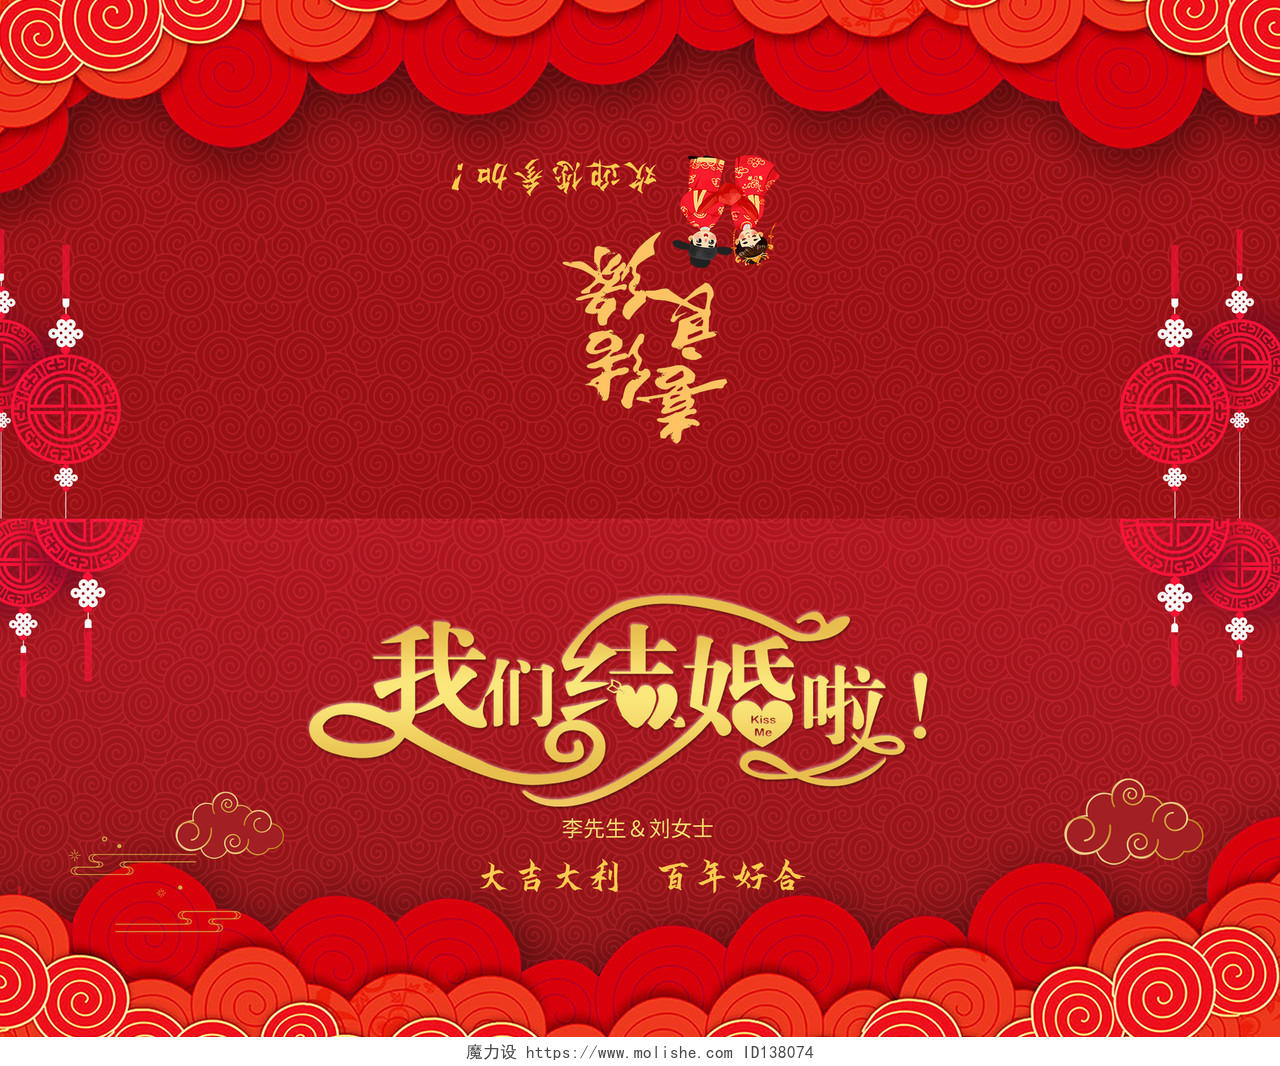 红色中式古典风格喜庆婚礼邀请函折页中式婚礼邀请函